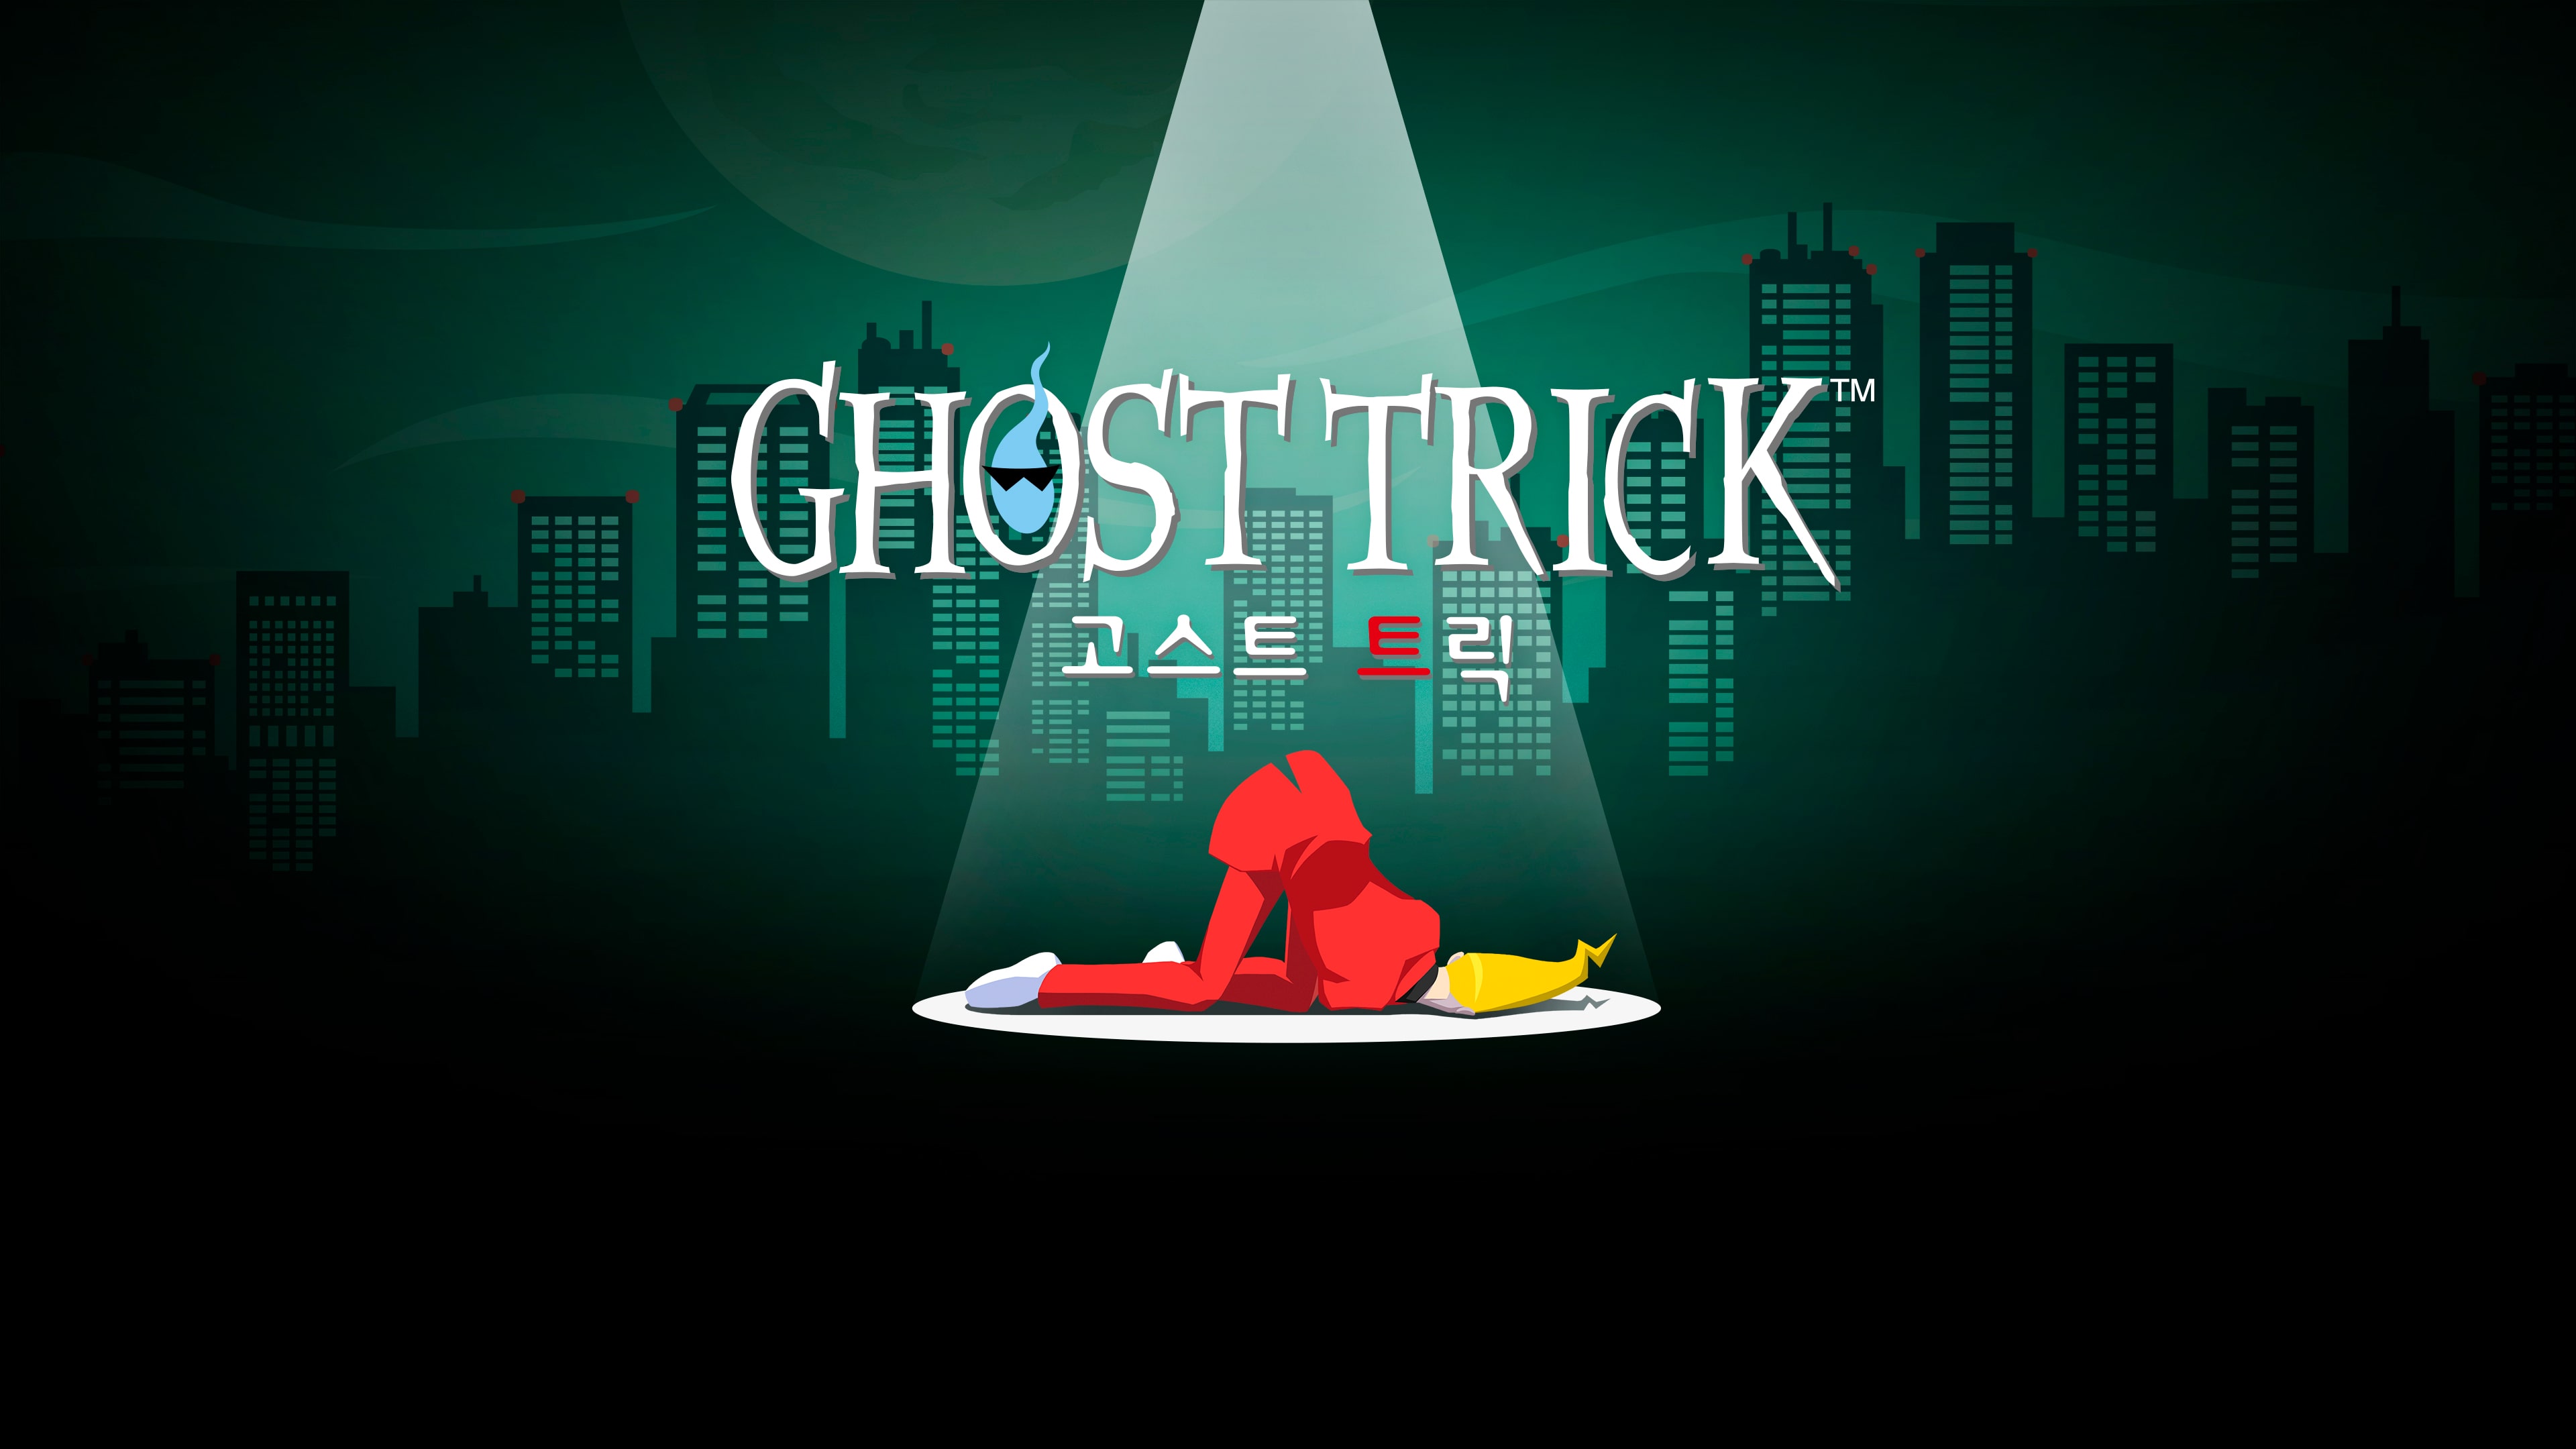 Ghost Trick (중국어(간체자), 한국어, 영어, 일본어, 중국어(번체자))